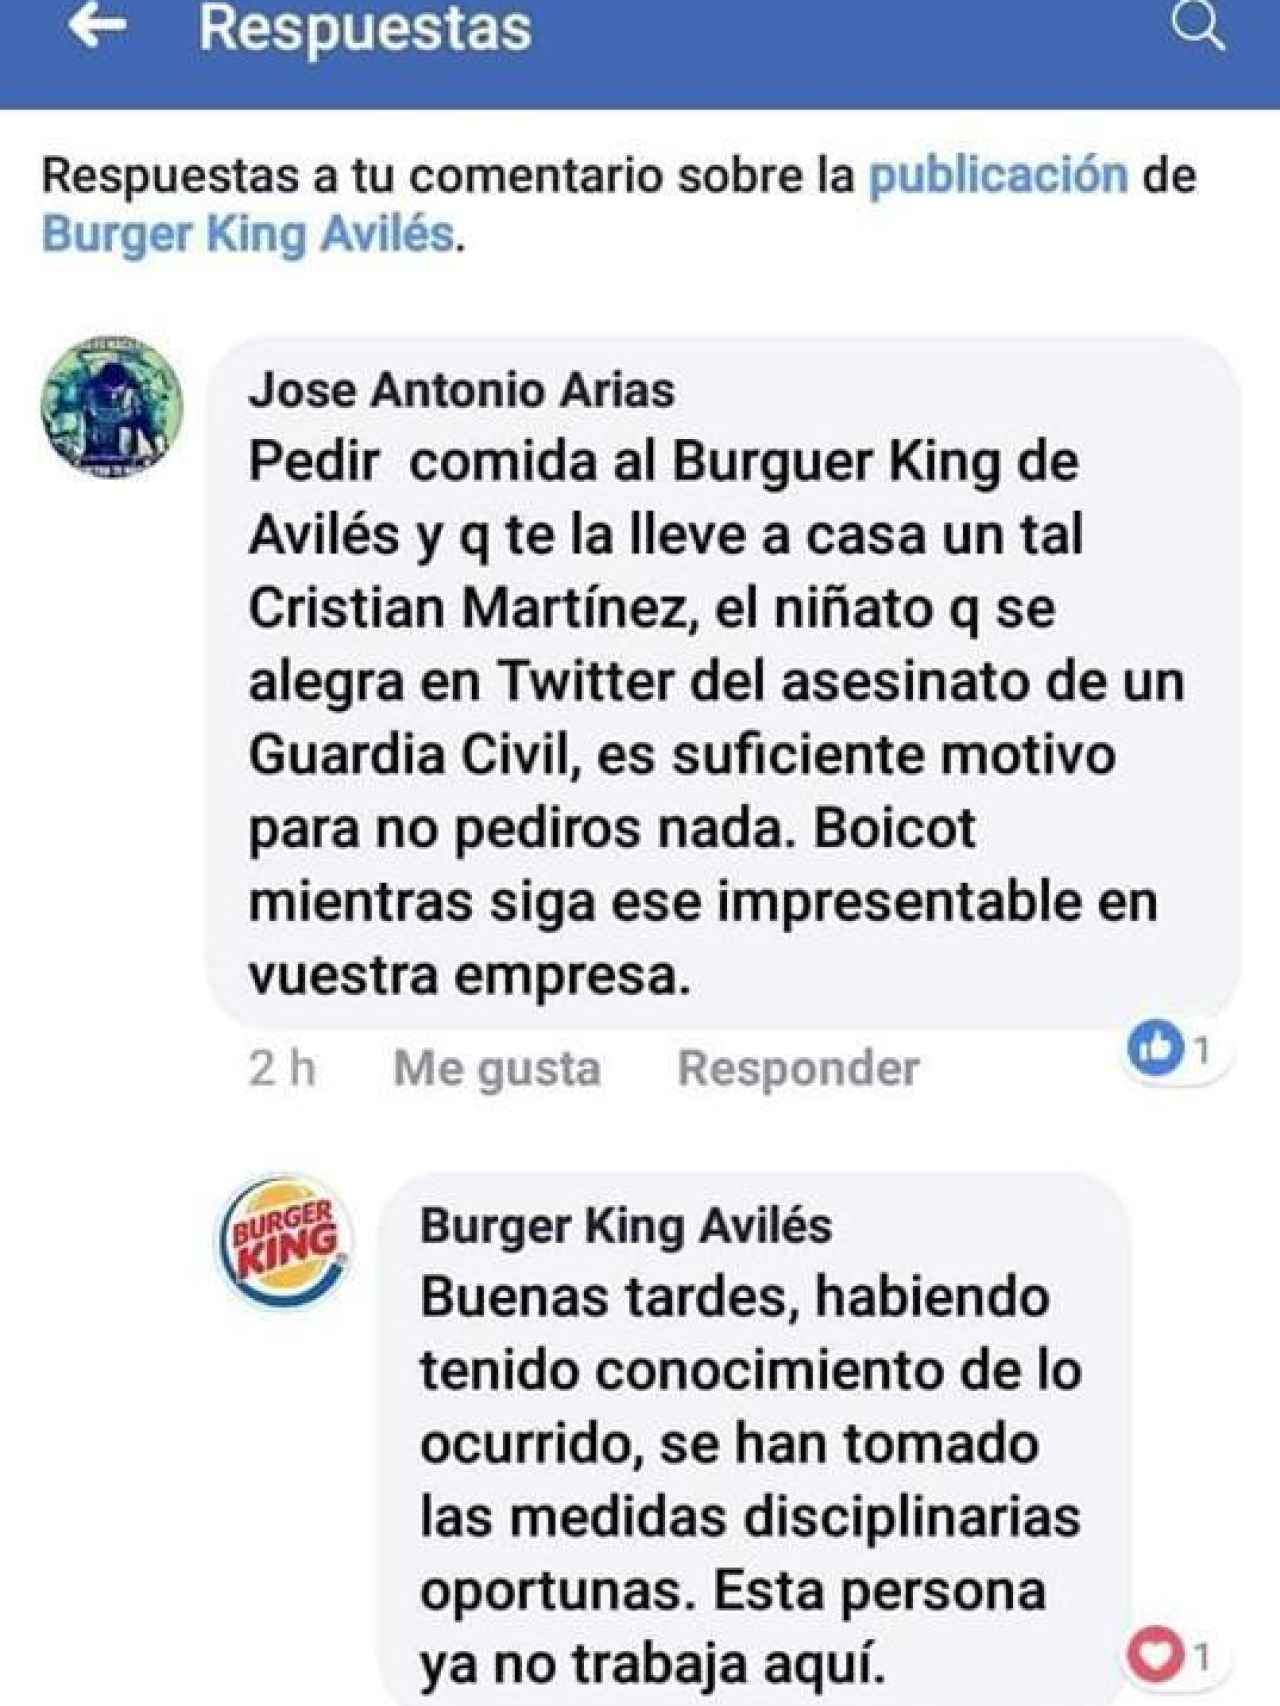 Respuesta de Burger King en Facebook